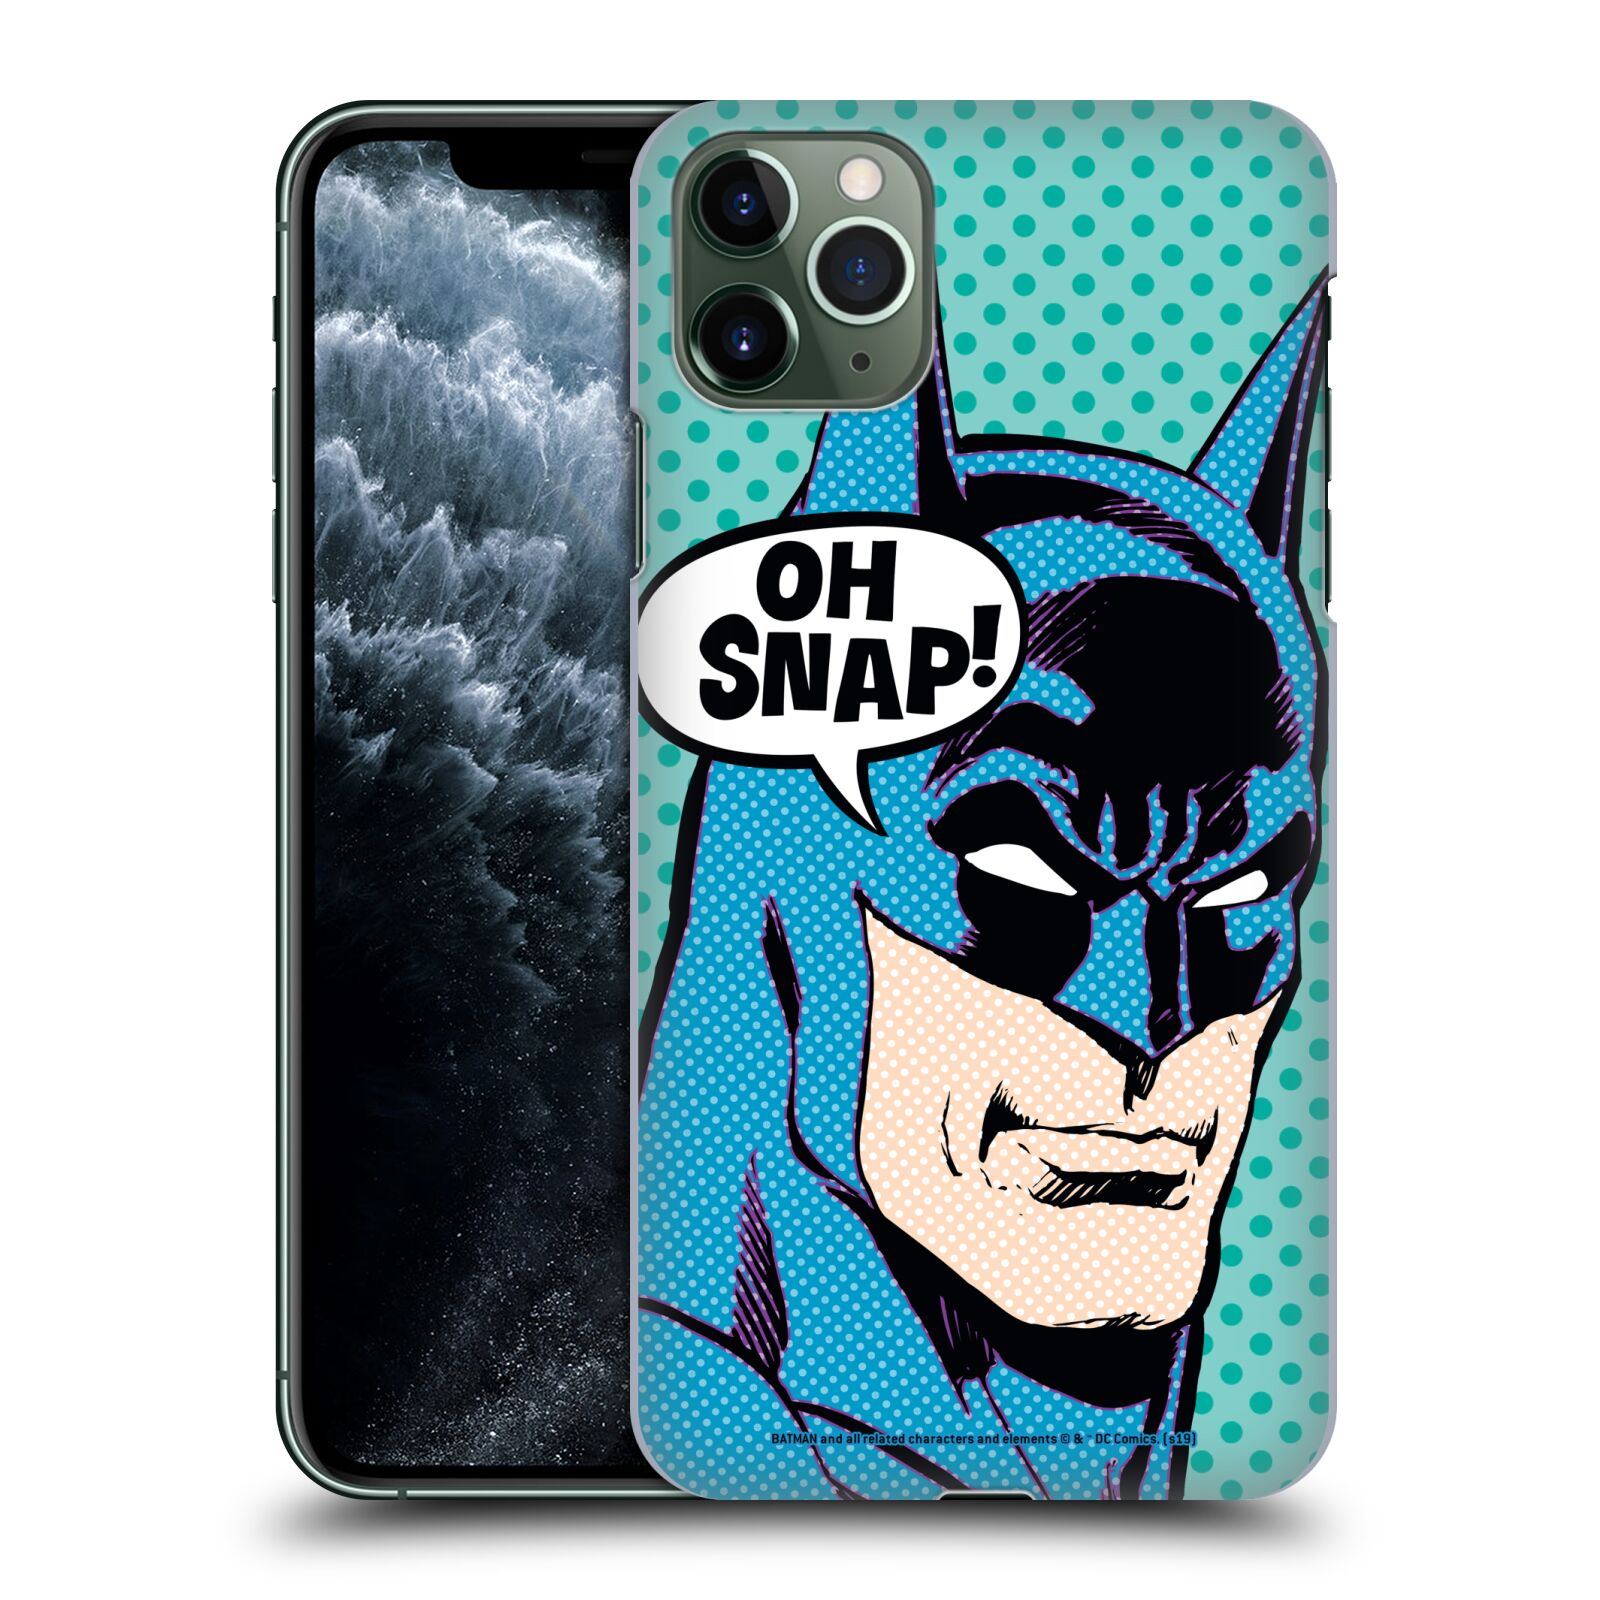 Pouzdro na mobil Apple Iphone 11 PRO MAX - HEAD CASE - DC komix Batman Pop Art tvář